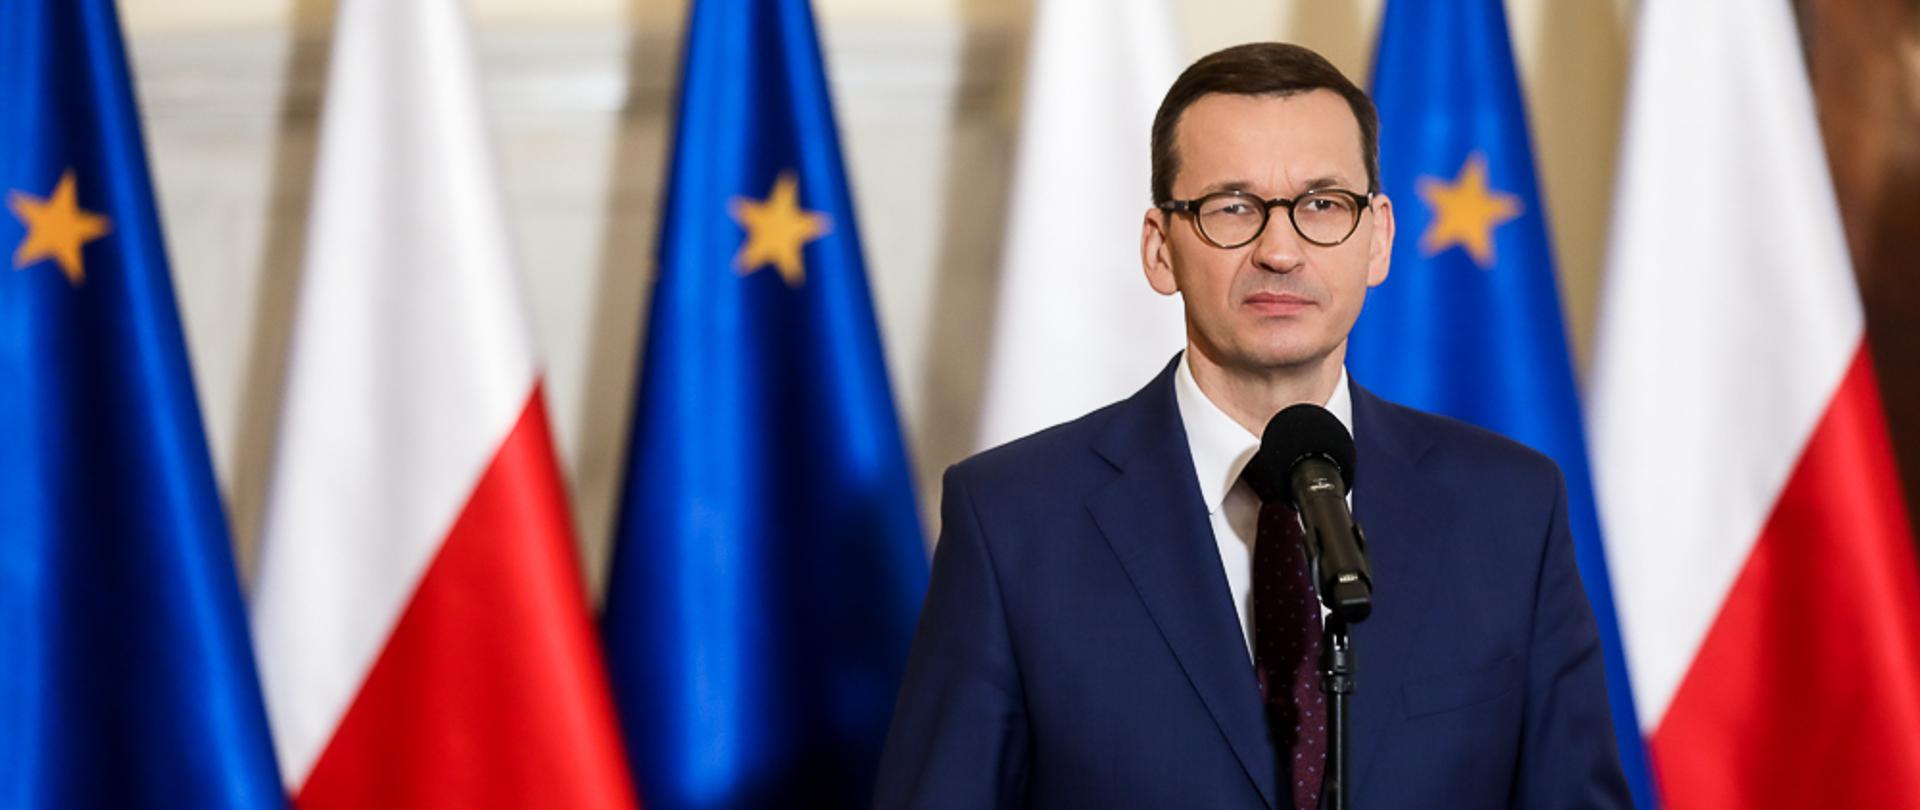 Premier Mateusz Morawiecki stoi przy mikrofonie. W tle flagi Polski i Unii Europejskiej.